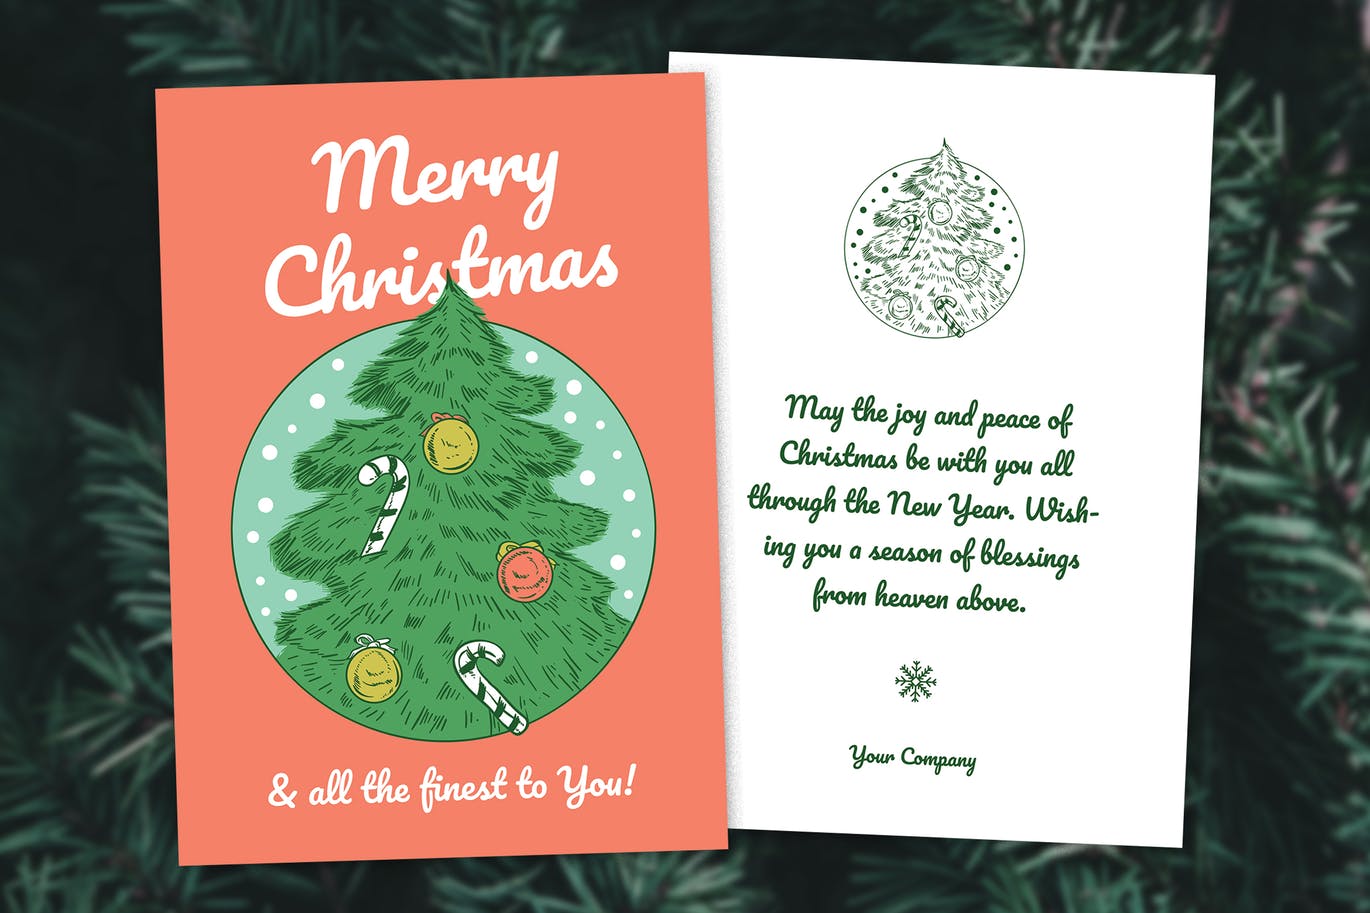 手绘圣诞树图案圣诞节双面设计贺卡/传单模板 Christmas 2 Sides Greeting Card / Flyer插图